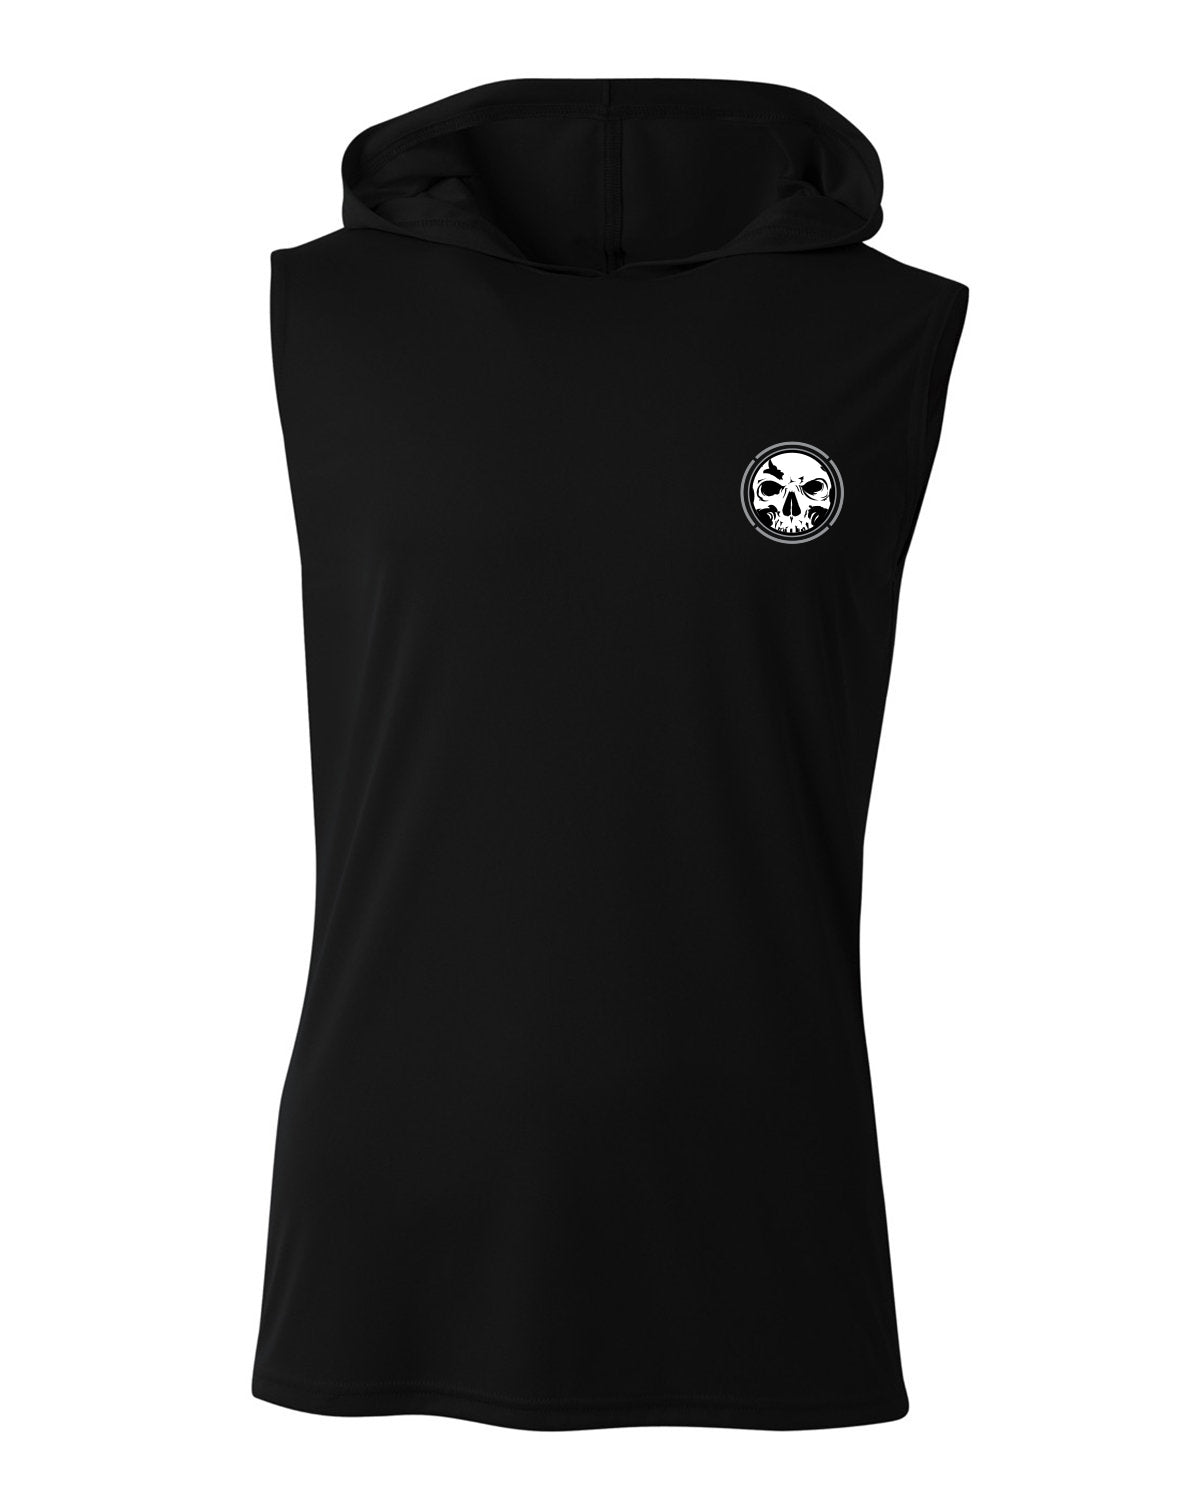 NEW! Men's Black Cooling Performance Sleeveless Hooded T-shirt